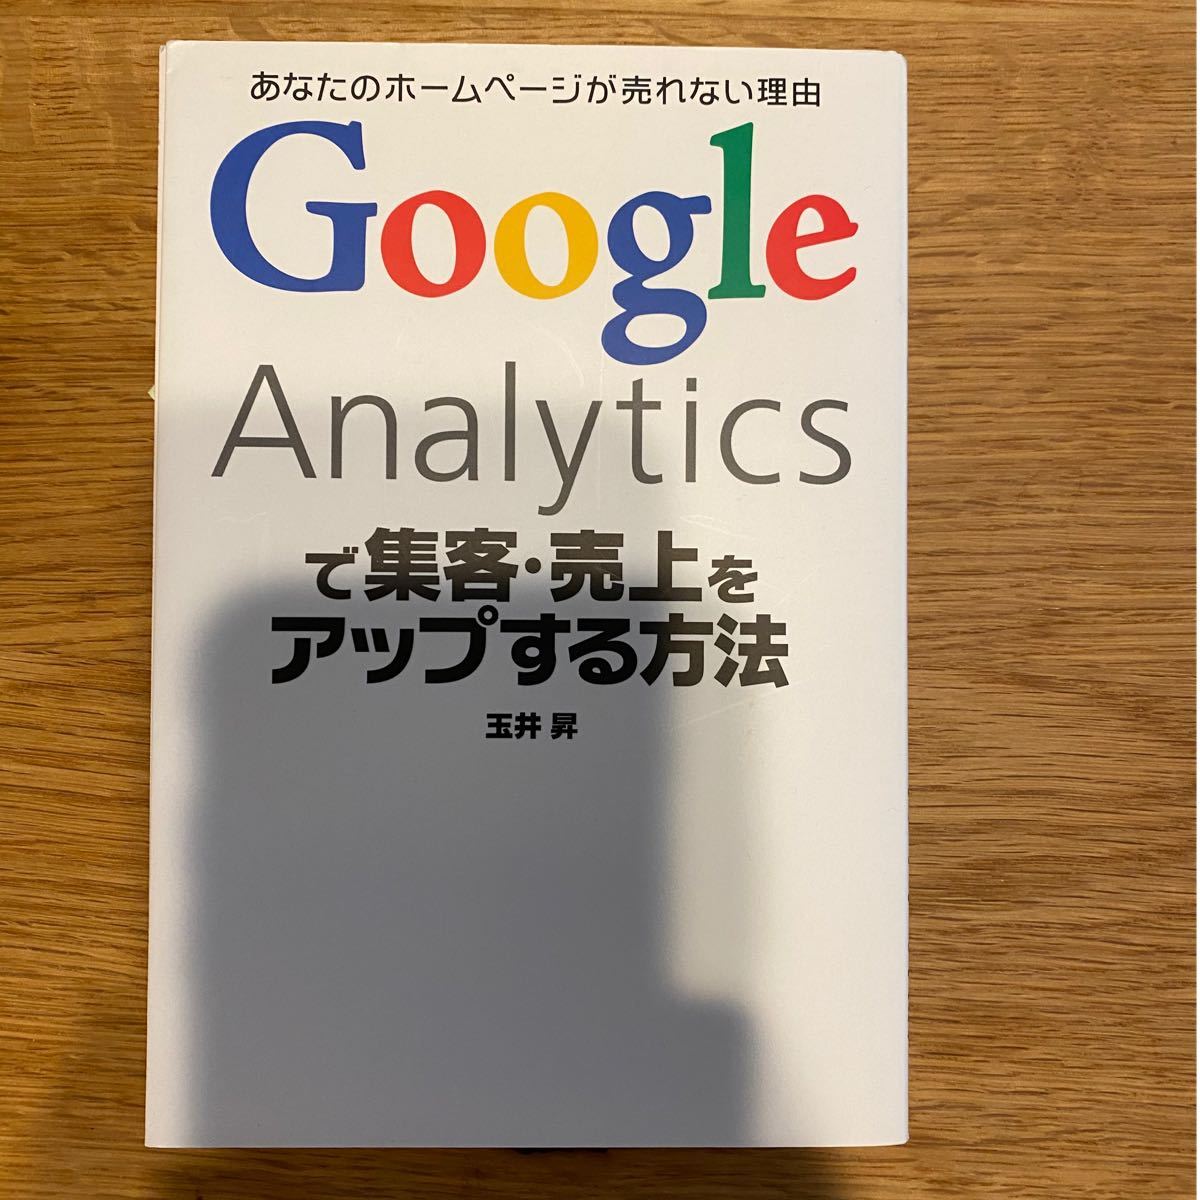 Google Analyticsで集客・売上をアップする方法　ビジネス書